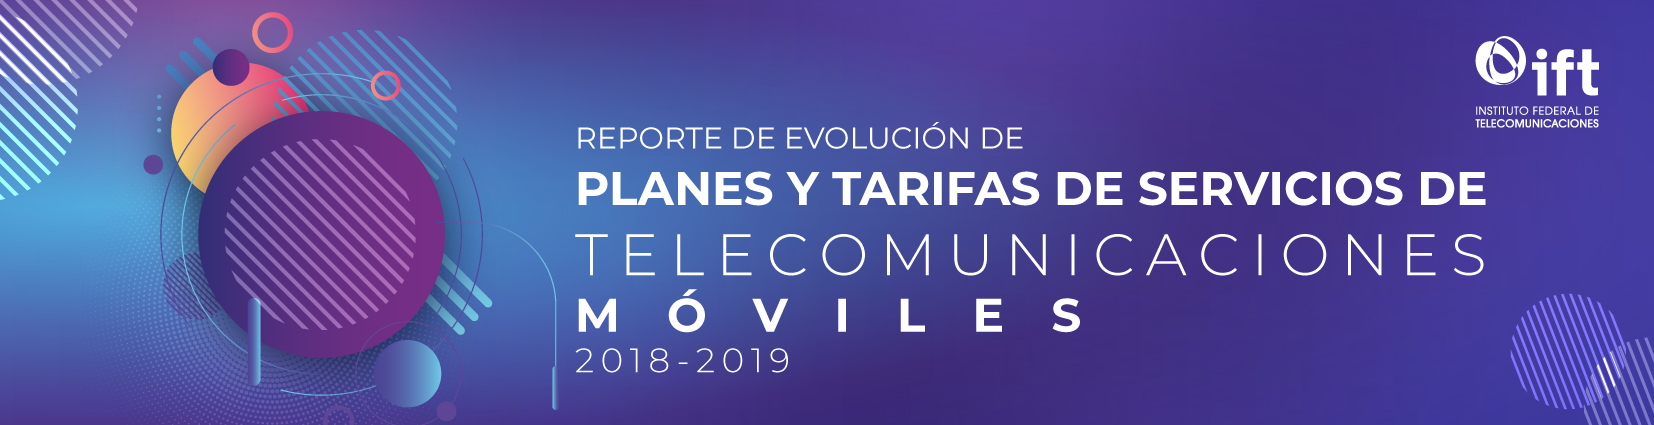 Reporte de Evolución de Planes y Tarifas de Servicios de Telecomunicaciones Móviles, 2018-2019